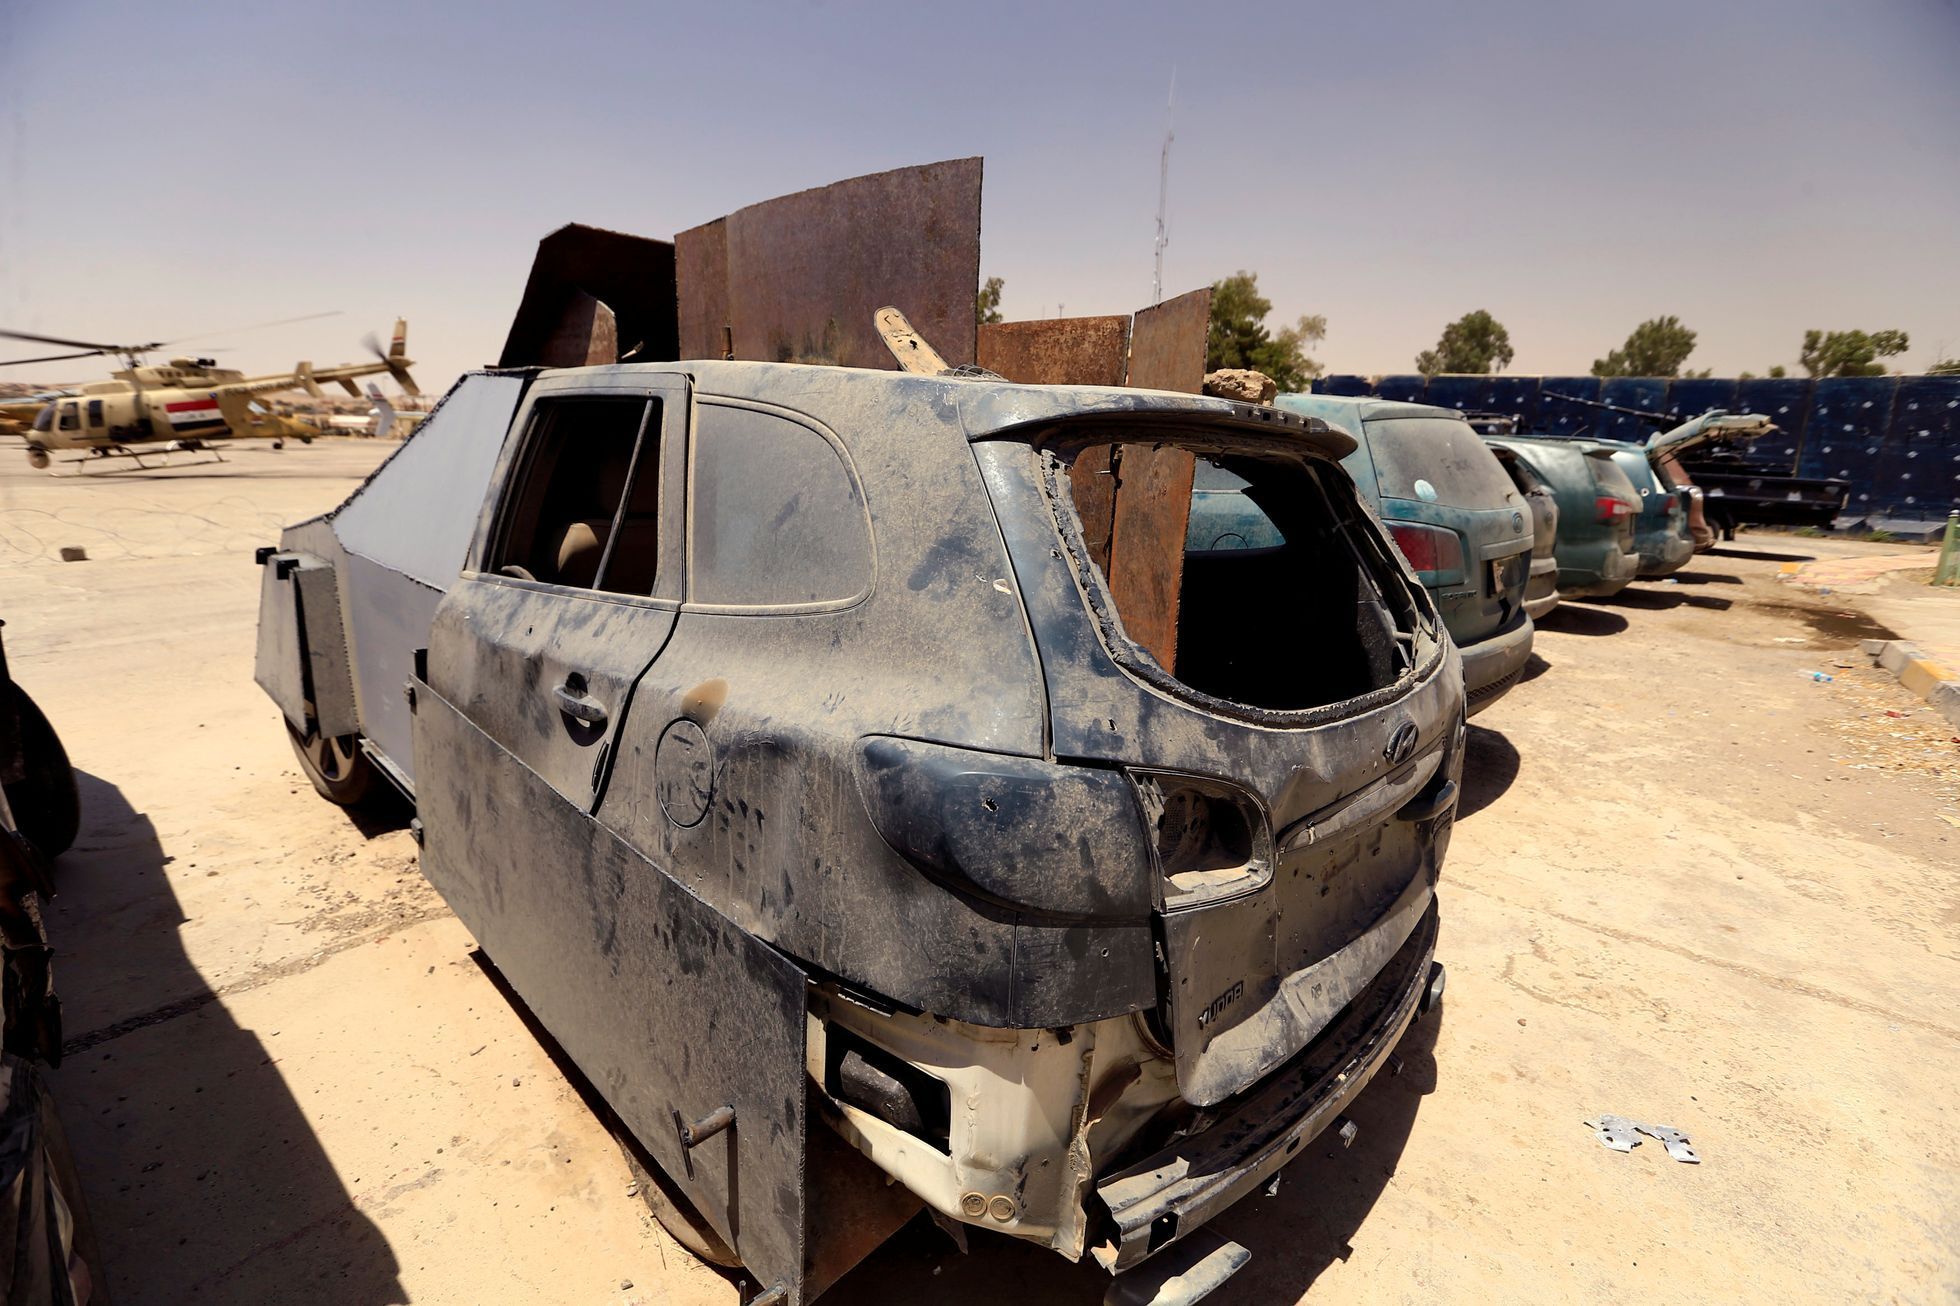 Sebevražedná auta jako z Šíleného Maxe. Největší chlouby Islámského státu